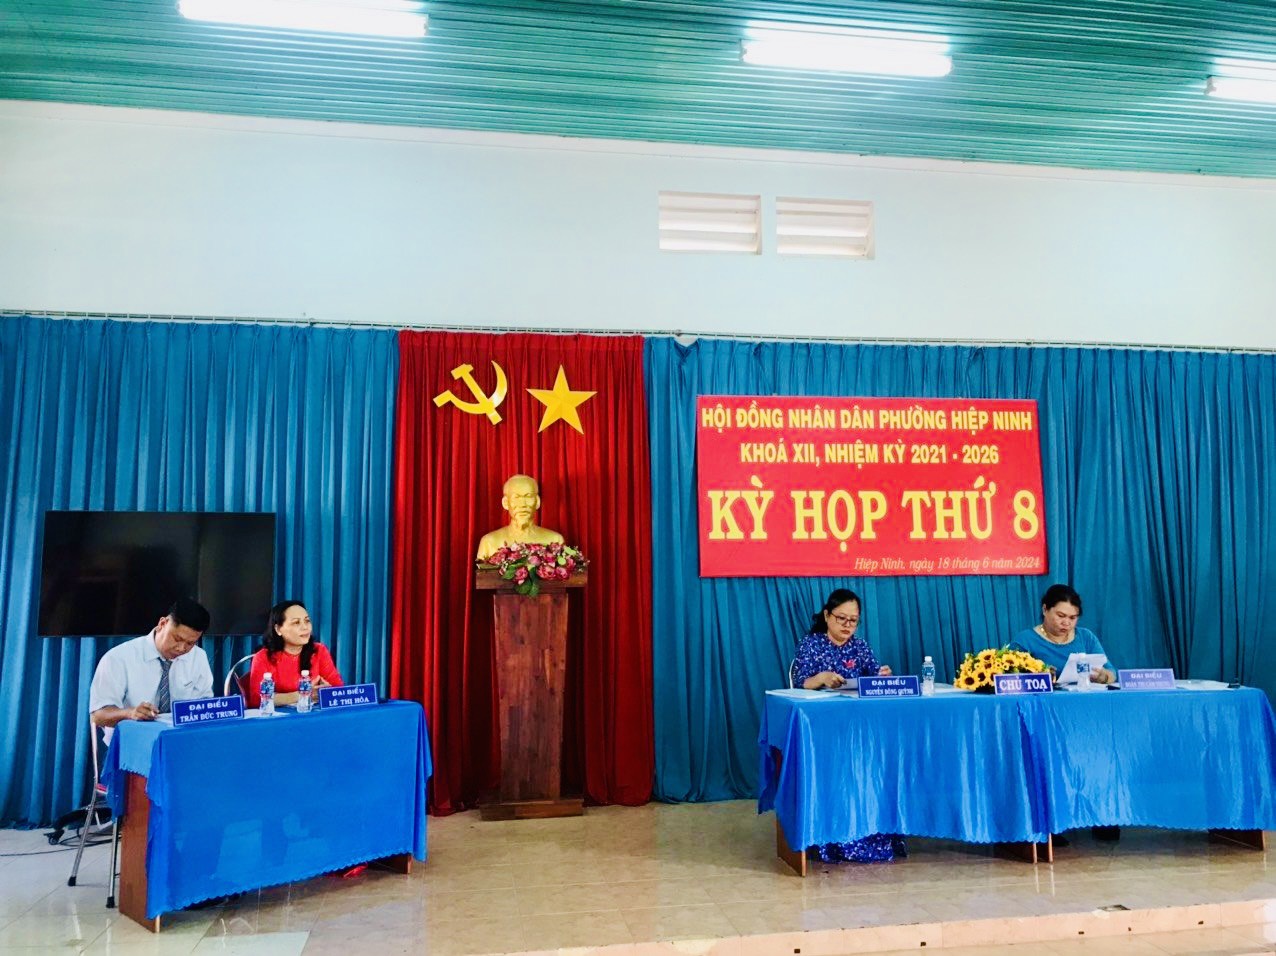 Hội đồng nhân dân phường Hiệp Ninh tổ chức kỳ họp thứ 8 (kỳ họp thường lệ) HĐND phường Khóa XII, nhiệm kỳ 2021 - 2026